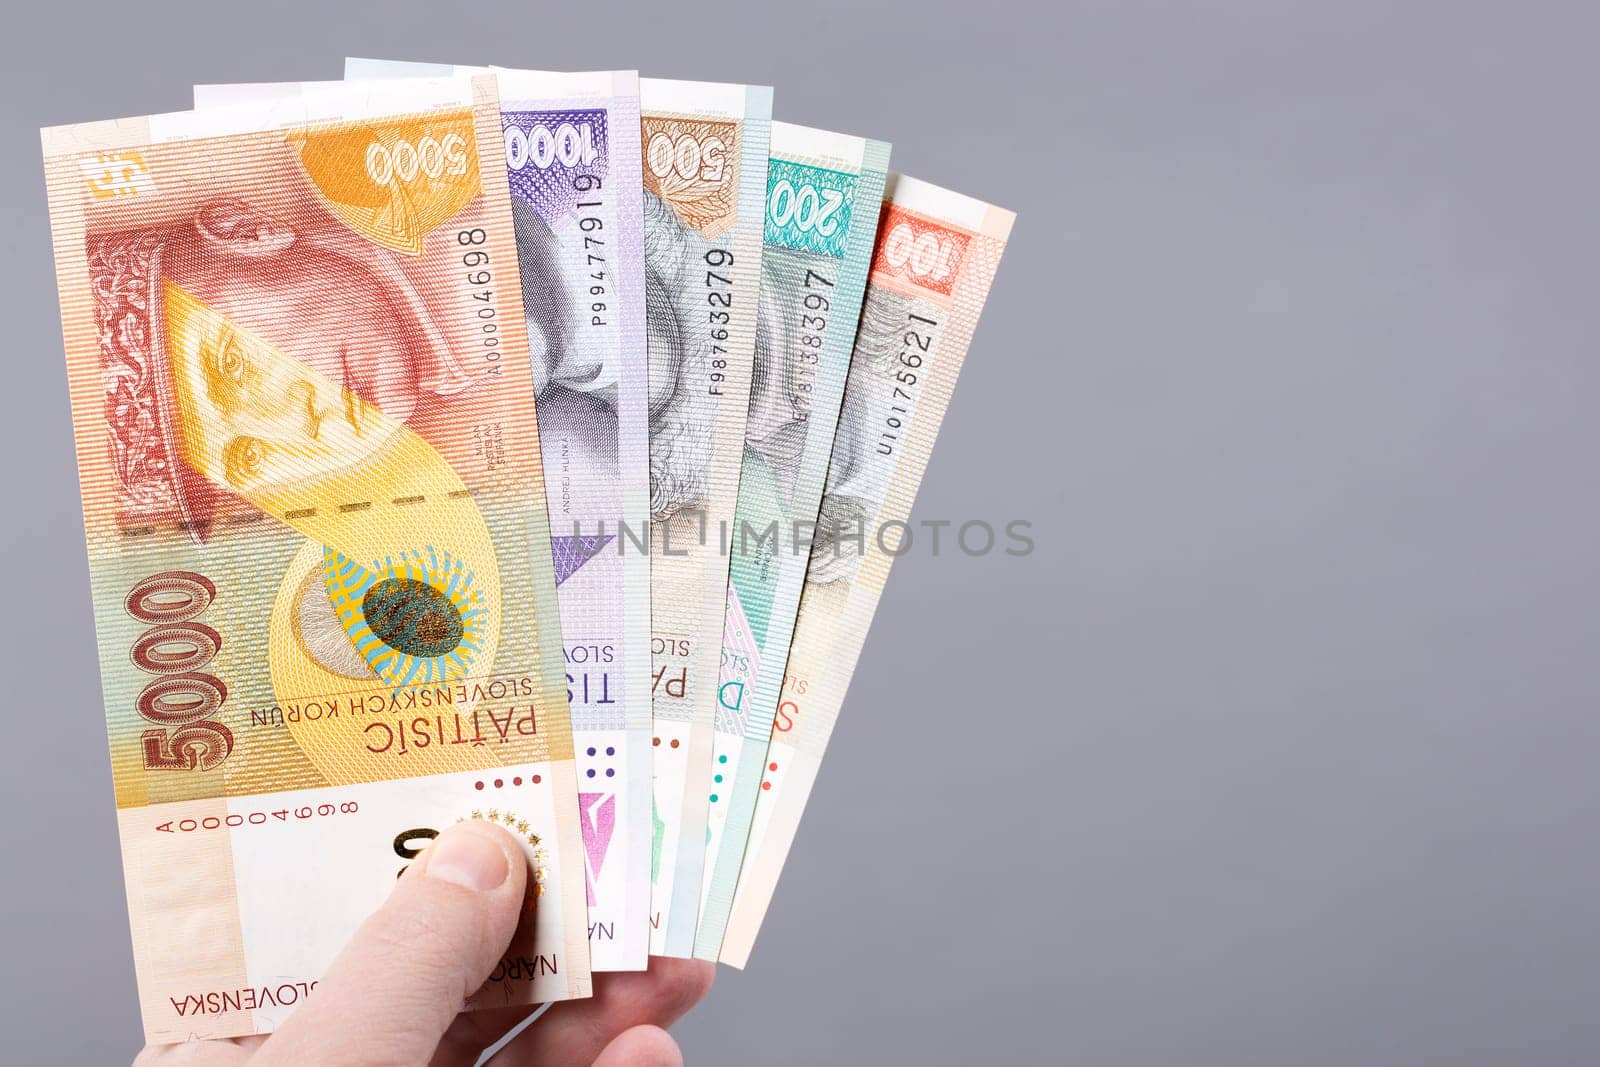 Slovak money on a gray background by johan10